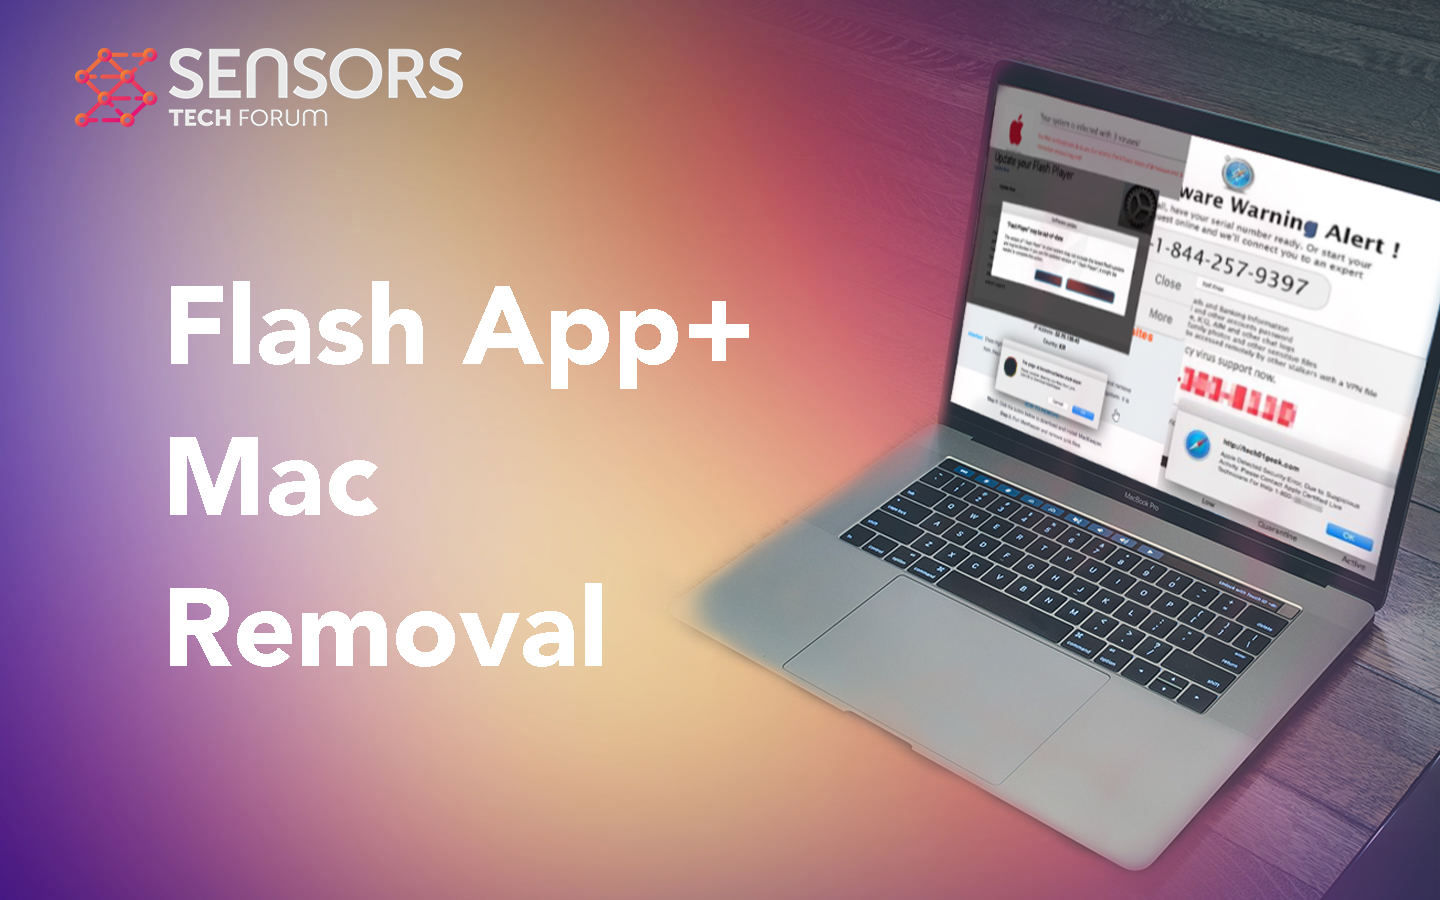 Guida alla rimozione di Flash App+ mac gratuita